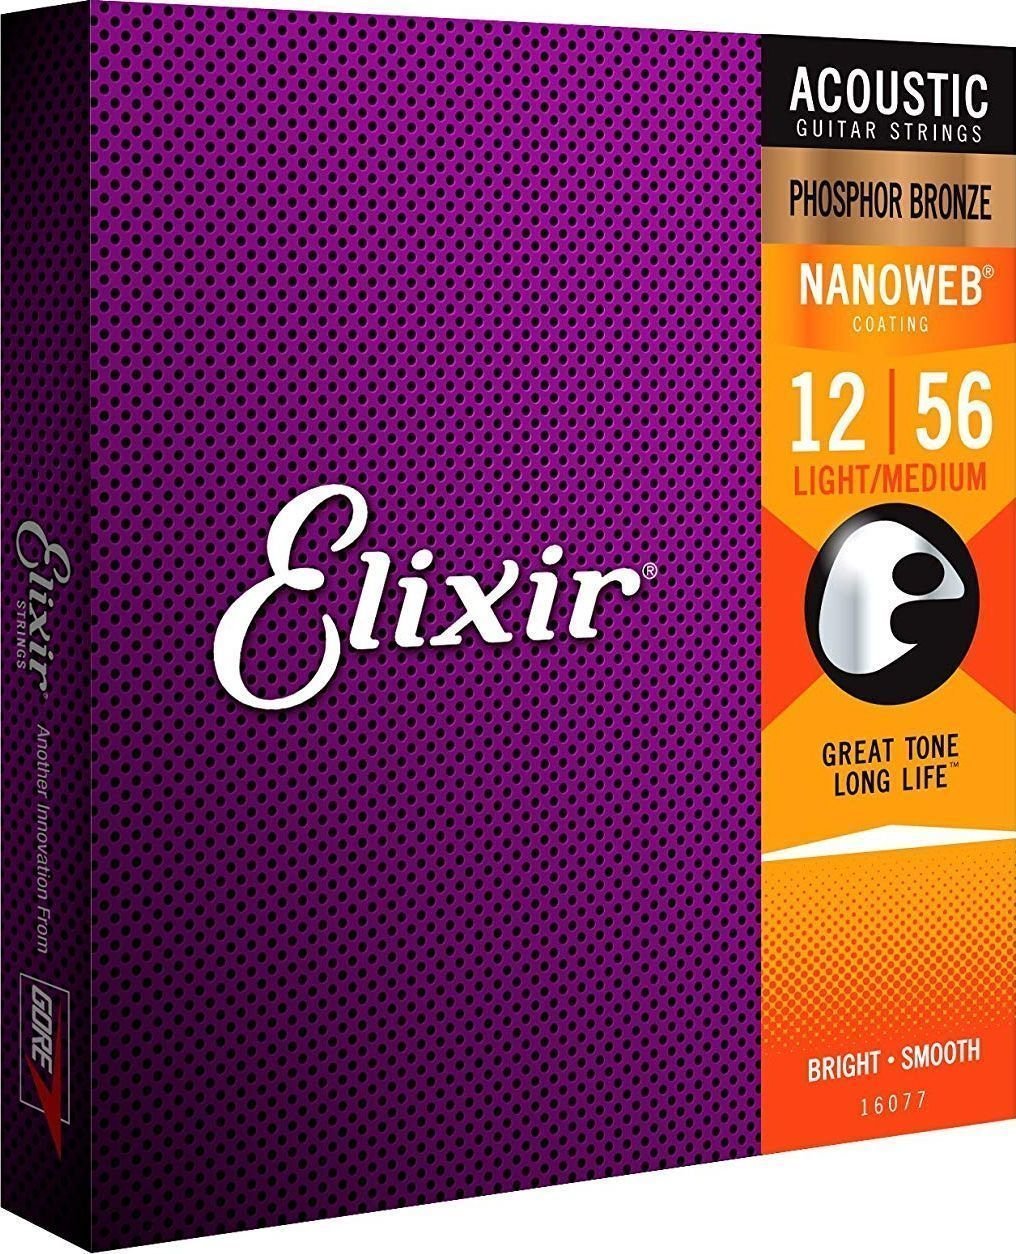 Snaren voor akoestische gitaar Elixir 16077 Nanoweb 12-56